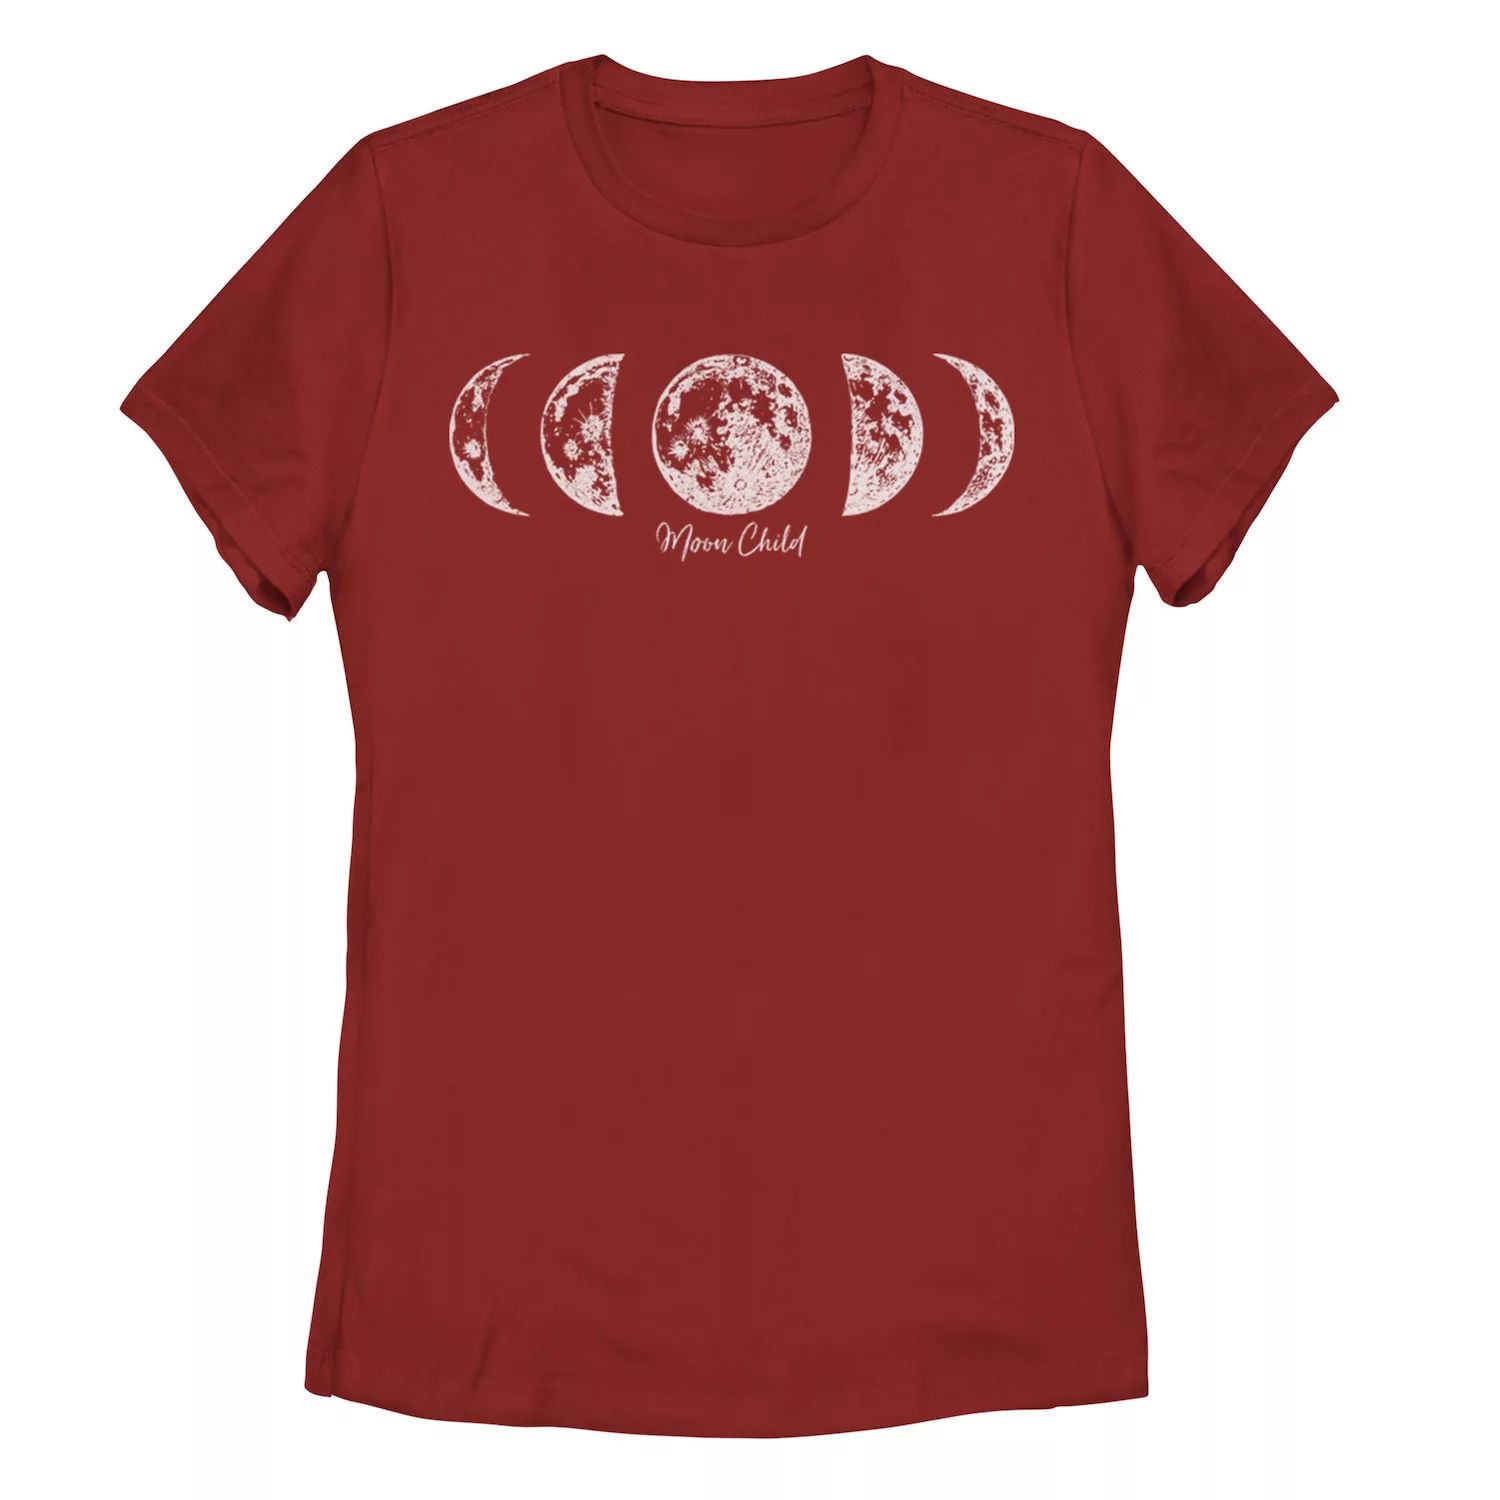 Детская футболка с рисунком Moon Child Galactic, красный